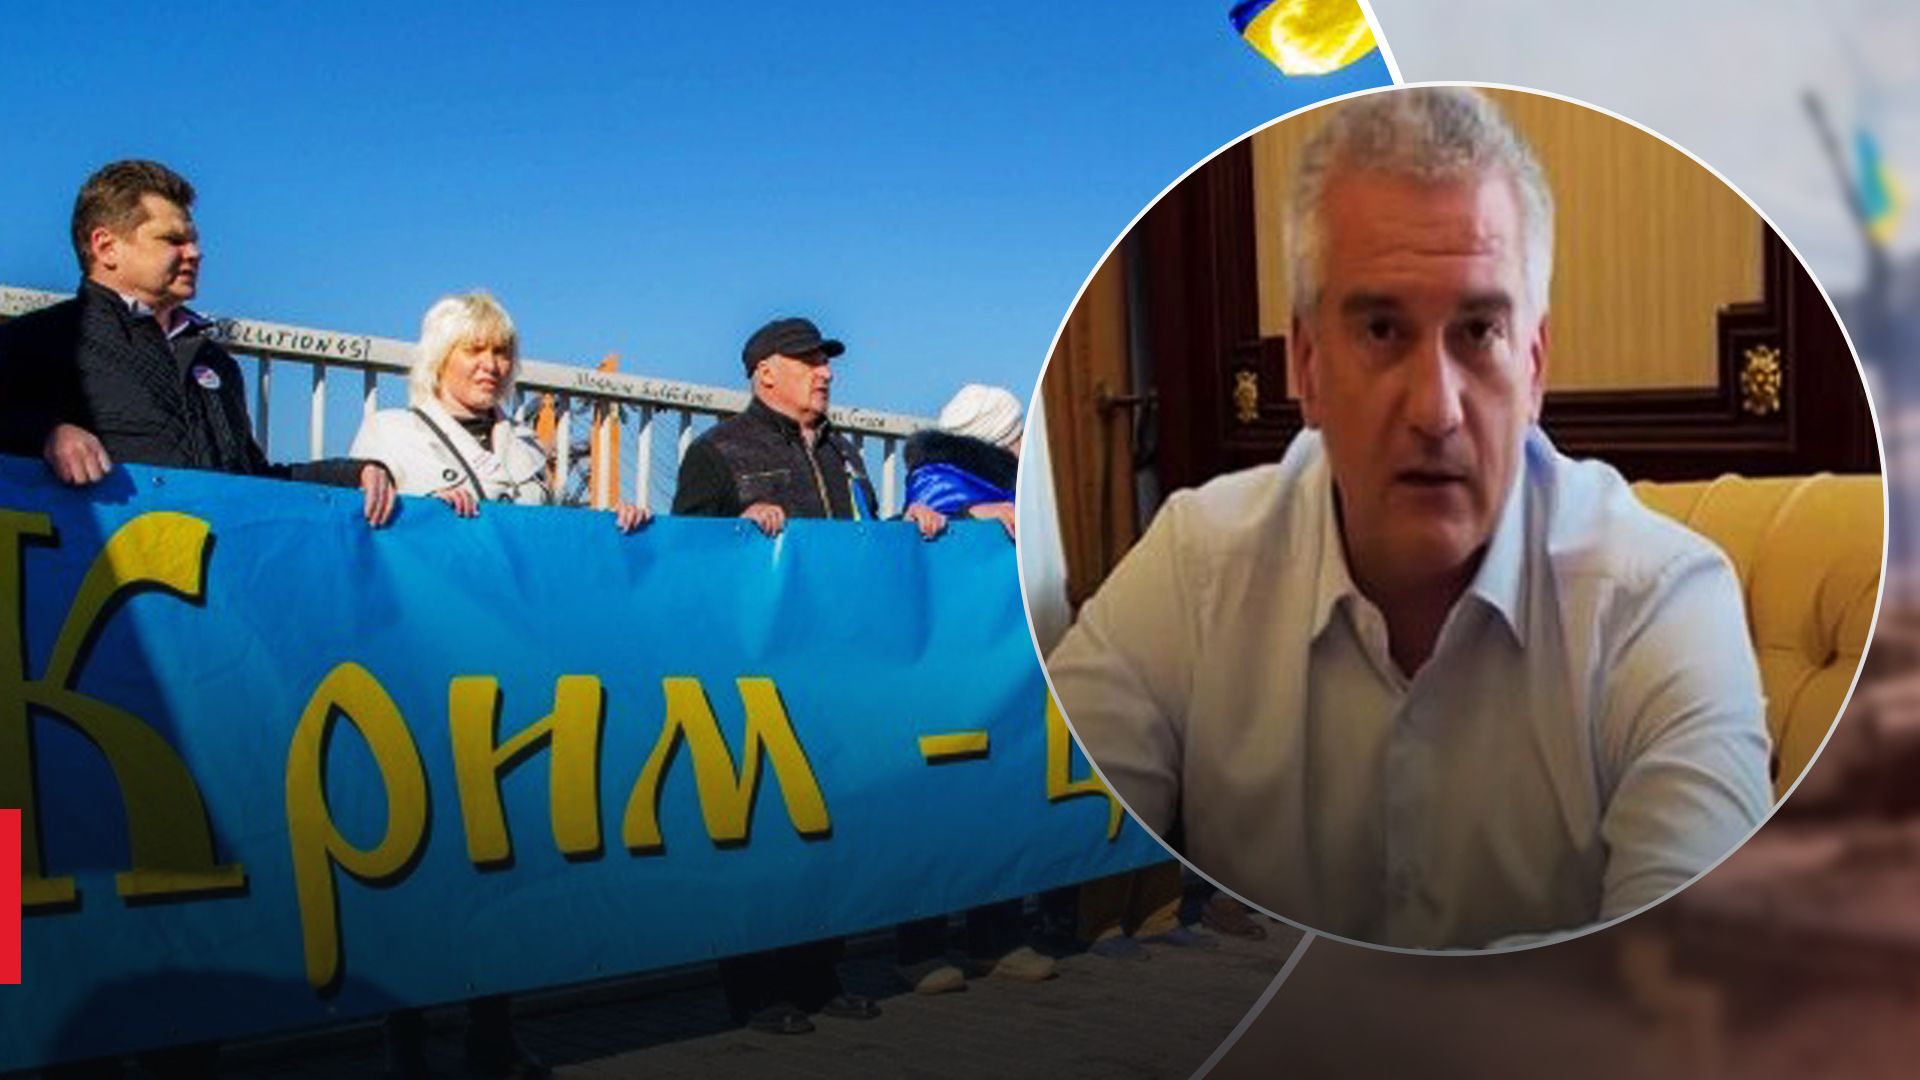 Езжайте в страну, которую так любите: Аксенов пригрозил жителям Крыма за проукраинские лозунги и песни